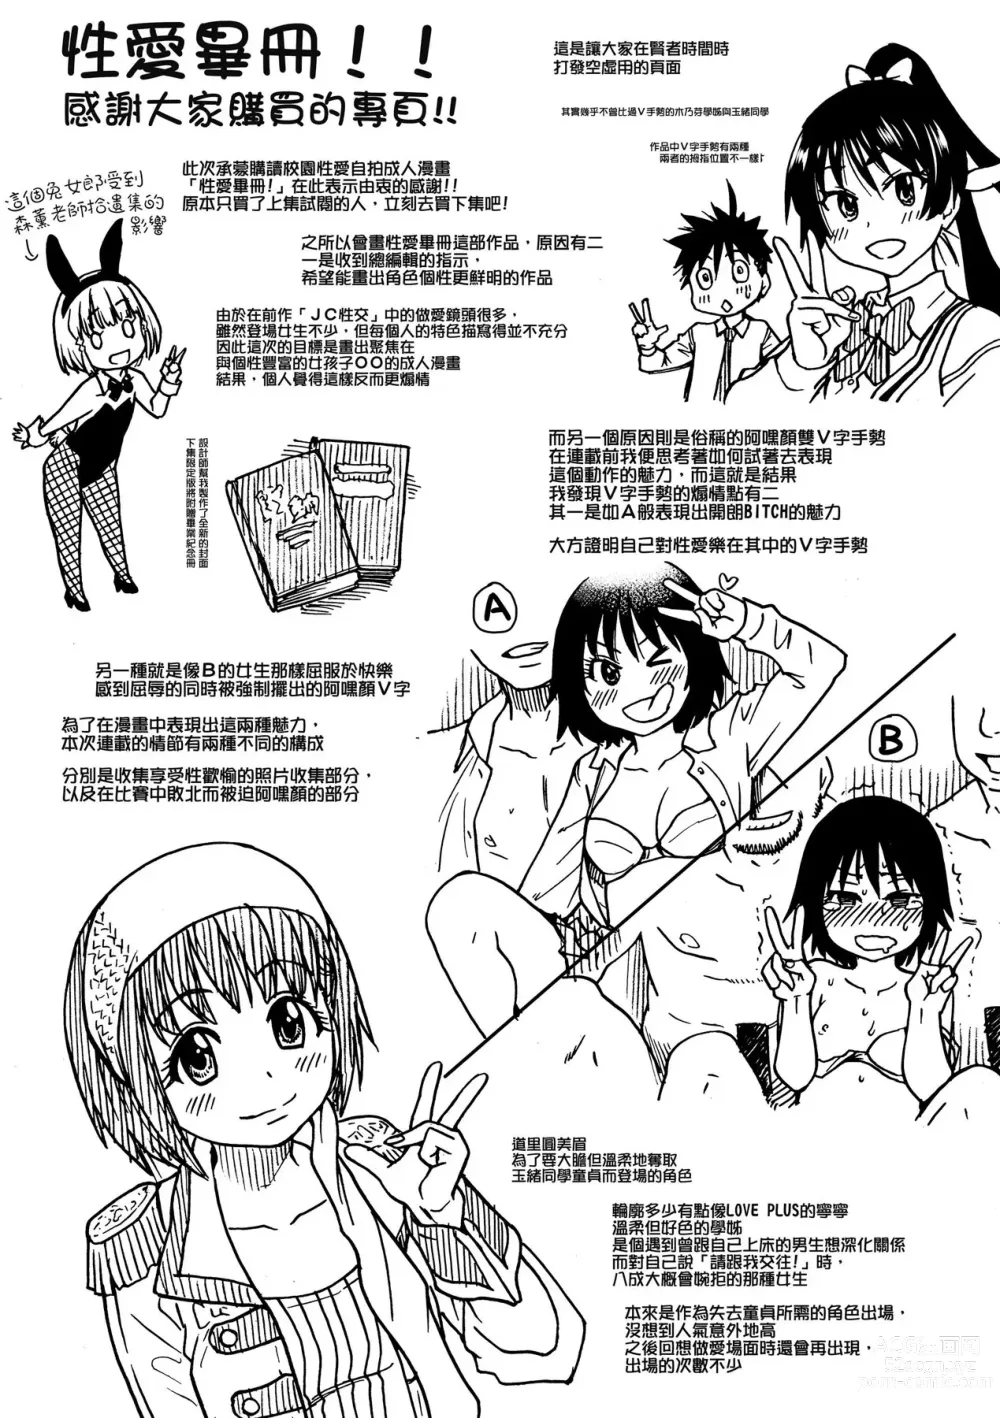 Page 262 of manga Peace Hame! Jou (decensored)